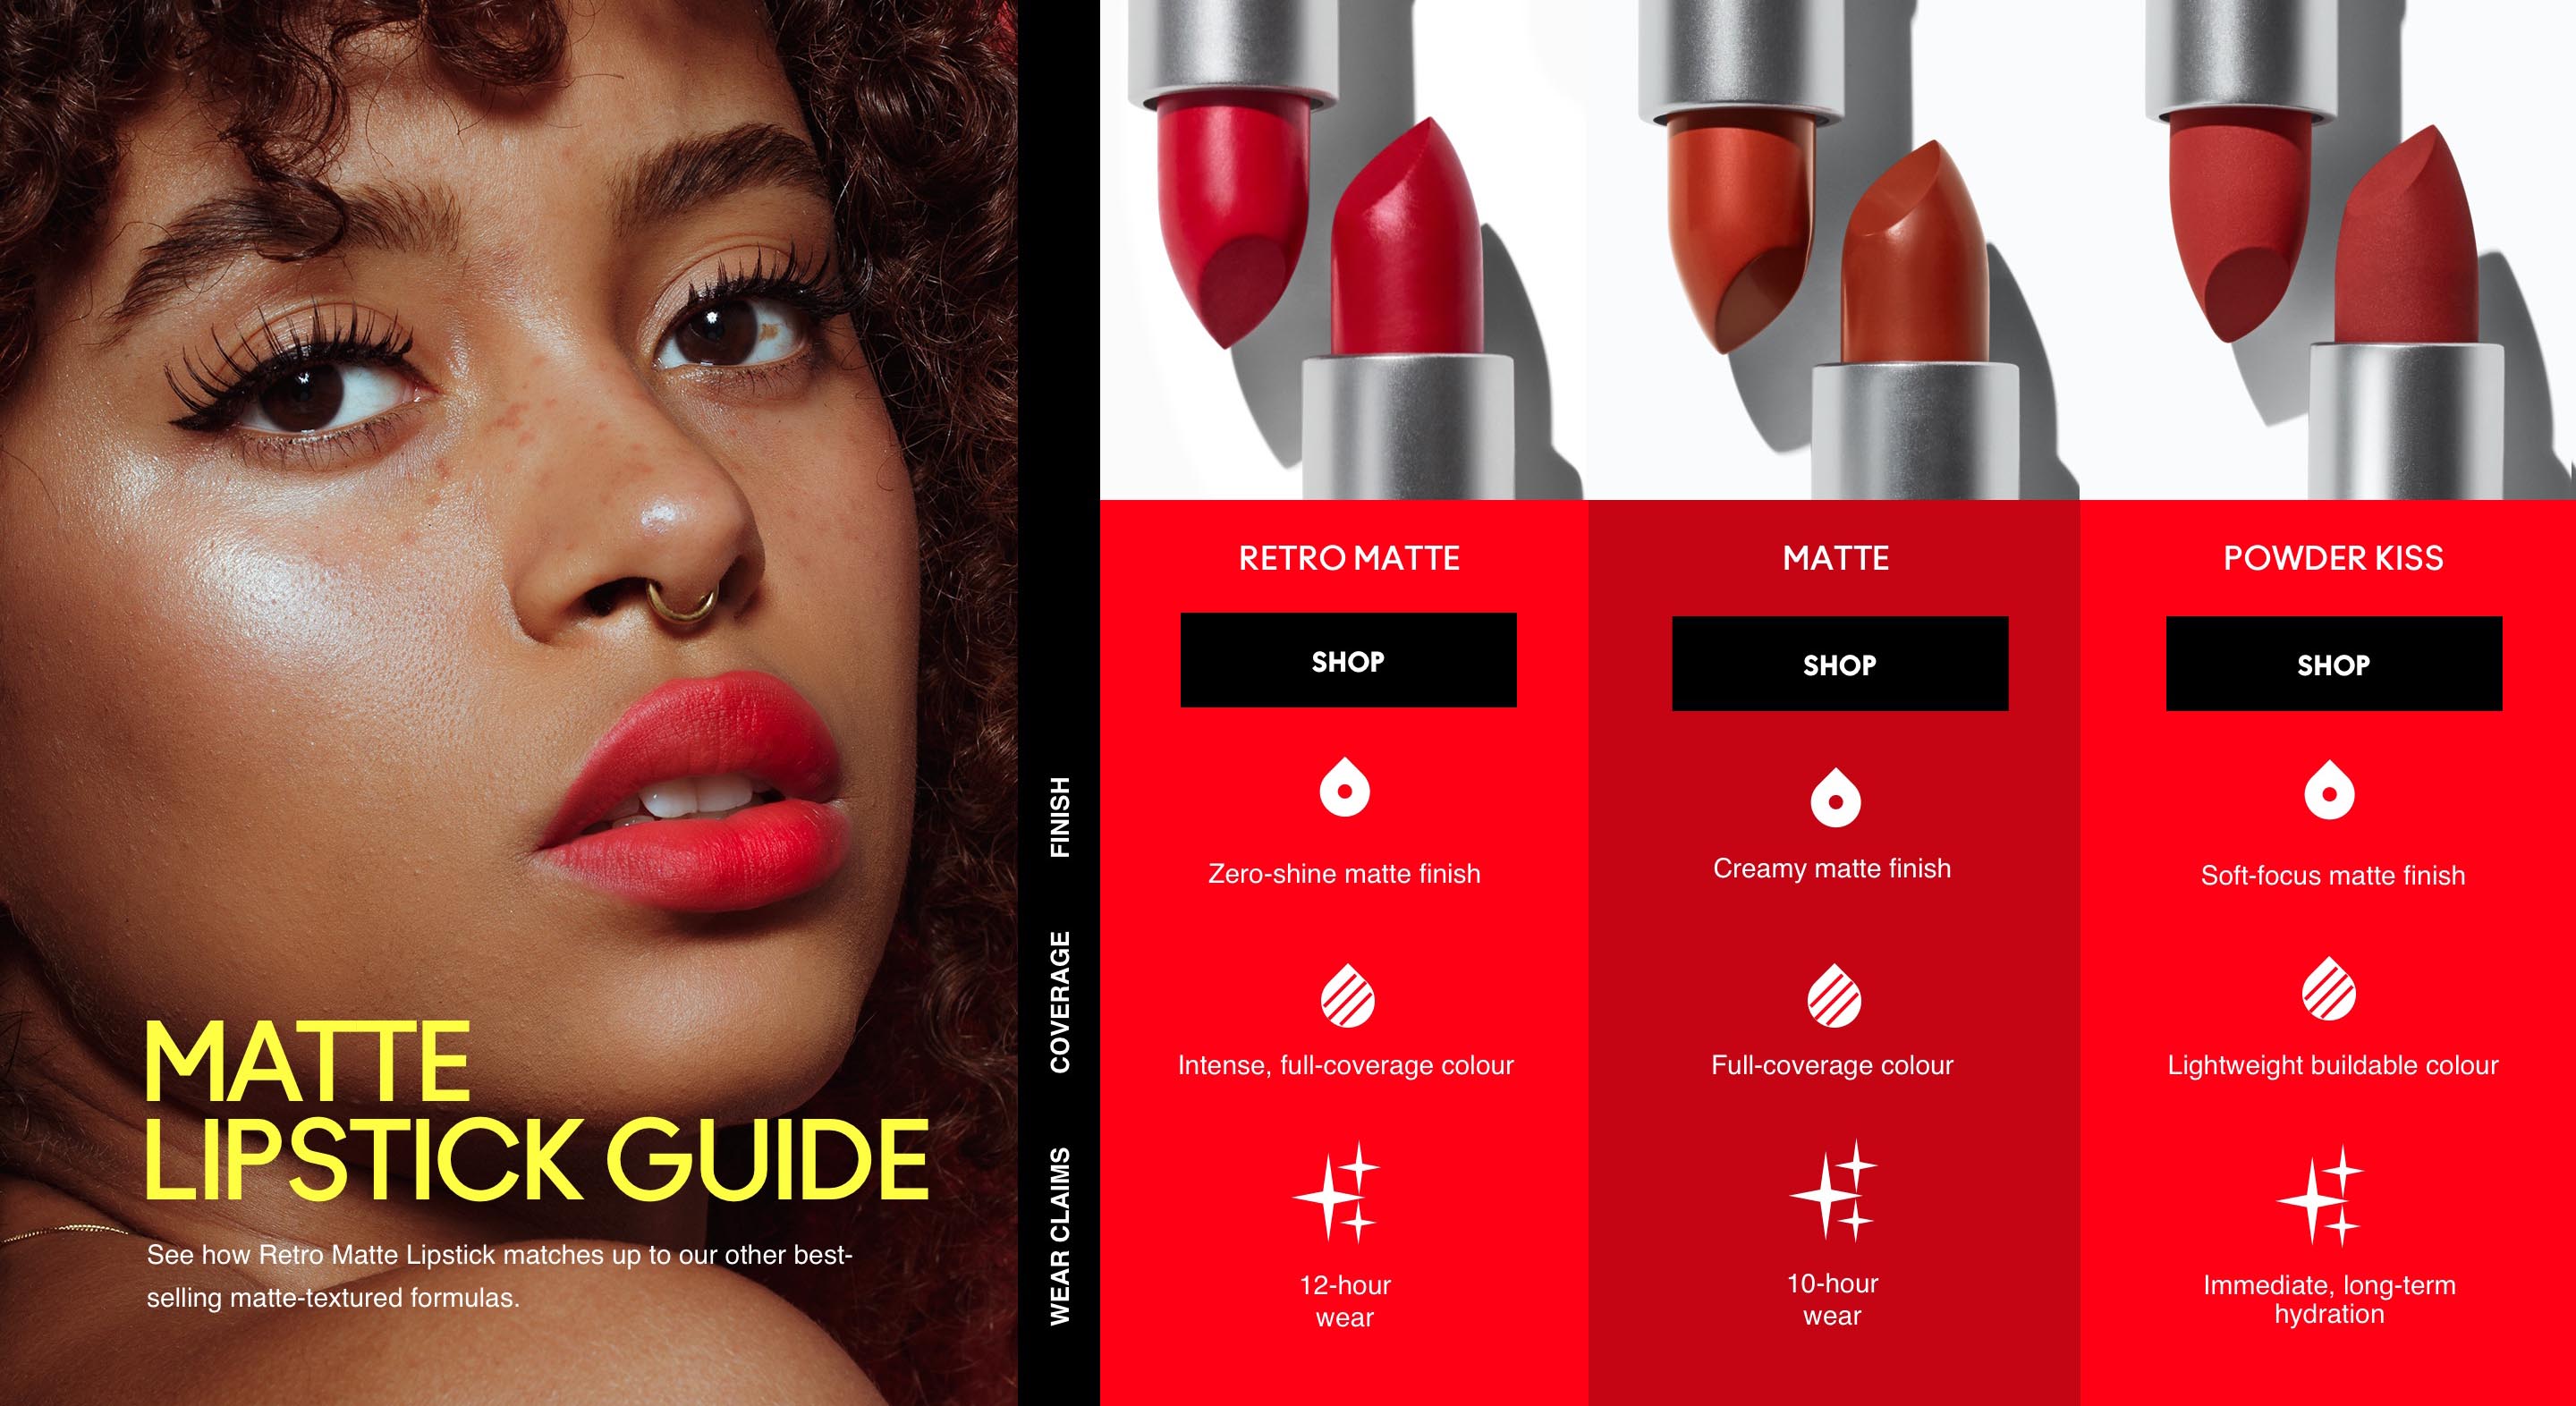  Mac Cosmetics/lápiz labial Ruby Woo 0.05 oz (0.0 fl oz) :  Belleza y Cuidado Personal